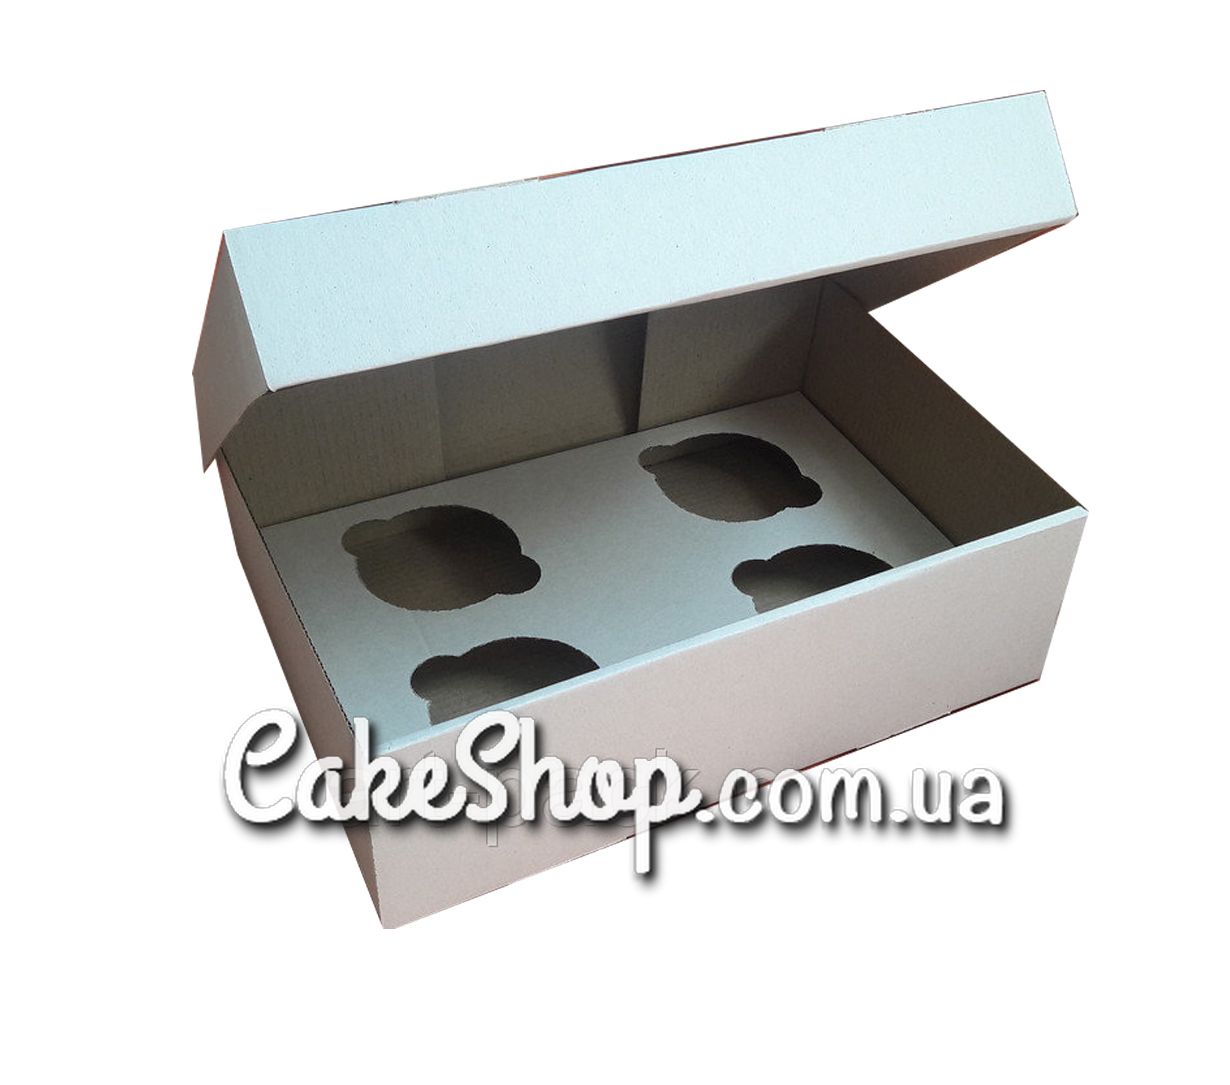 ⋗ Коробка на 4 кекса из гофрокартона Белая, 25х17х8 см купить в Украине ➛ CakeShop.com.ua, фото